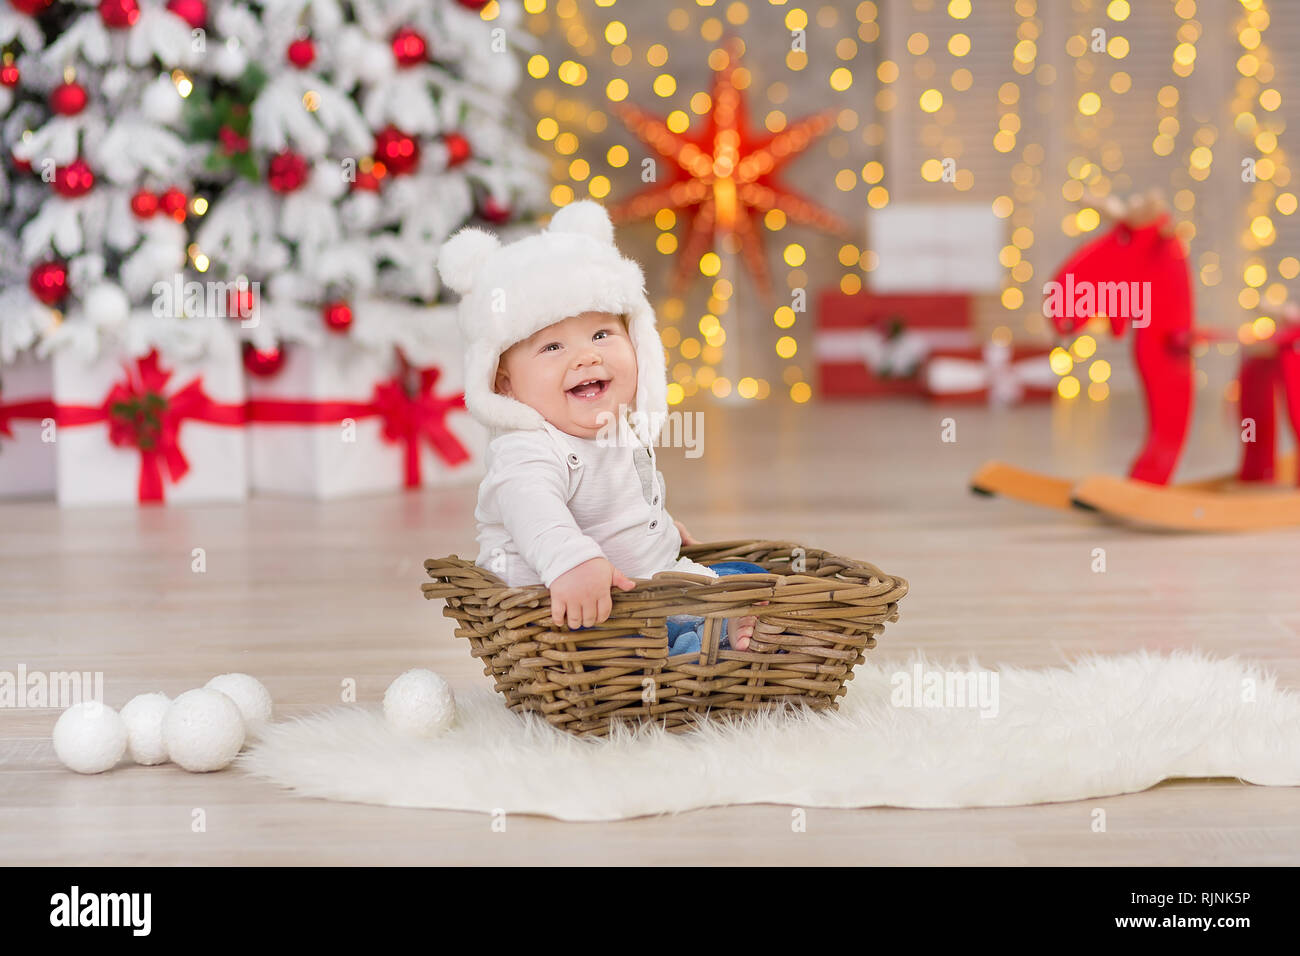 Schöne kleine baby boy feiert Weihnachten. Das neue Jahr Urlaub. Baby in  einem Weihnachten kostüm legere Kleidung mit Geschenken auf Fell in der  Nähe des Neuen Jahres tr Stockfotografie - Alamy